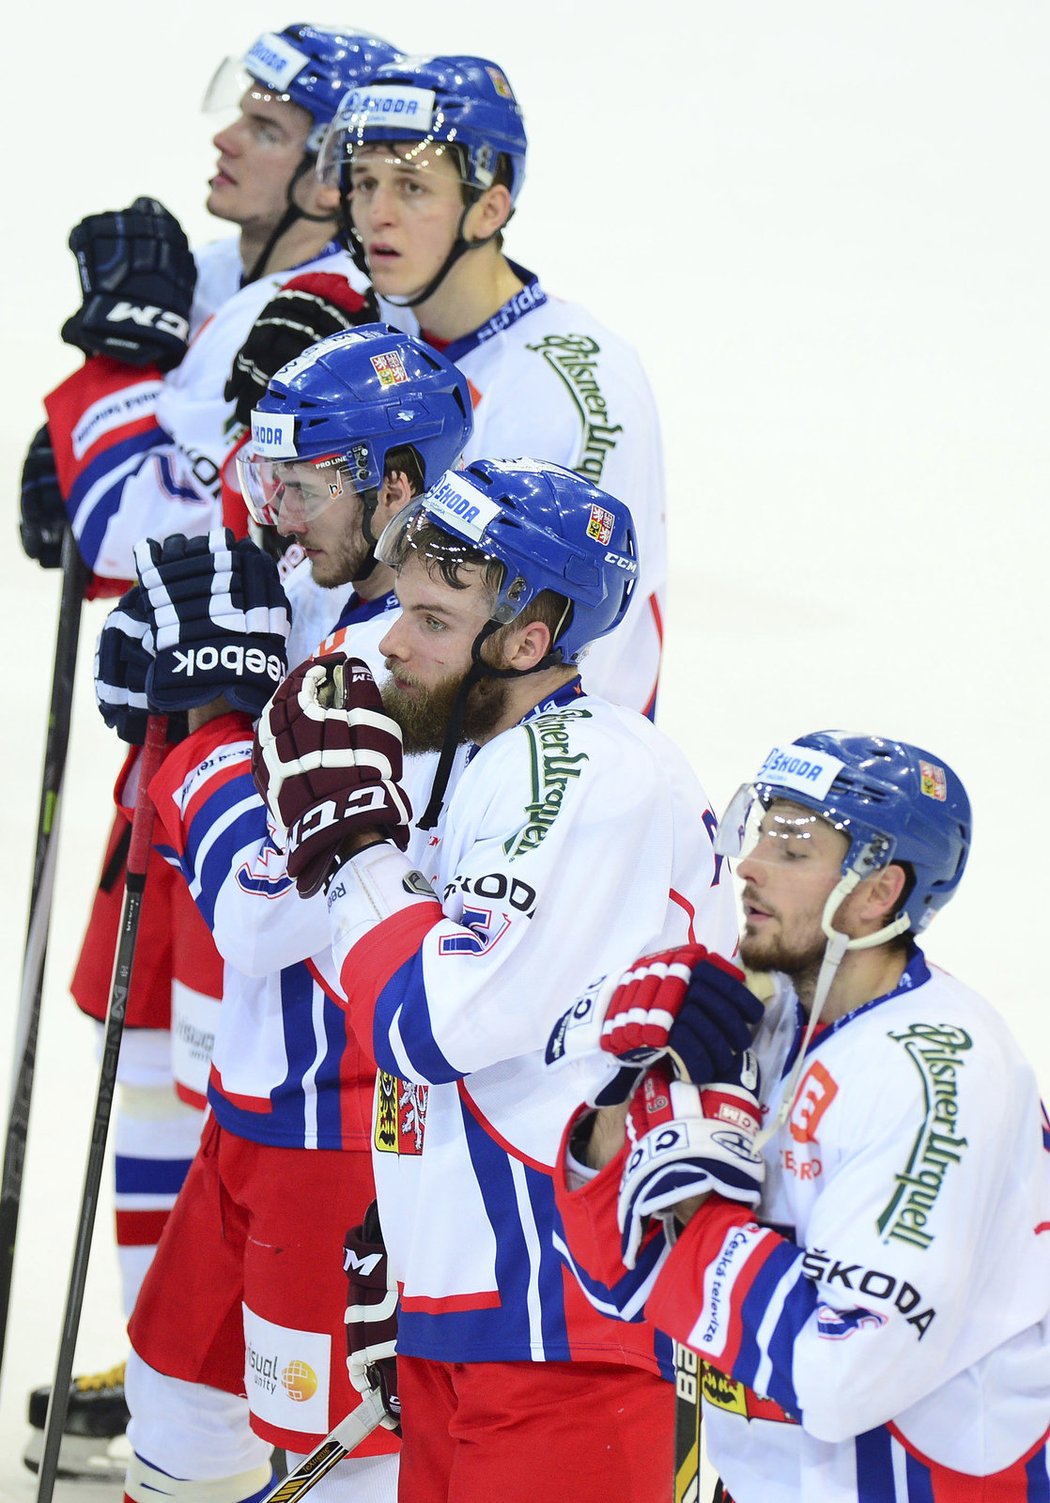 Čeští hokejisté prohráli v úvodním utkání Channel One Cupu v pražské O2 areně před 16.348 diváky se Švédskem 4:6. Nepřipsali si tak ani na čtvrtý pokus první výhru v sezoně, přestože vedli už 3:0 a pak ještě 4:3. Pro svěřence trenéra Vladimíra Růžičky pokračuje druhý díl Euro Hockey Tour v Soči sobotním duelem s Finskem a nedělním s Ruskem.